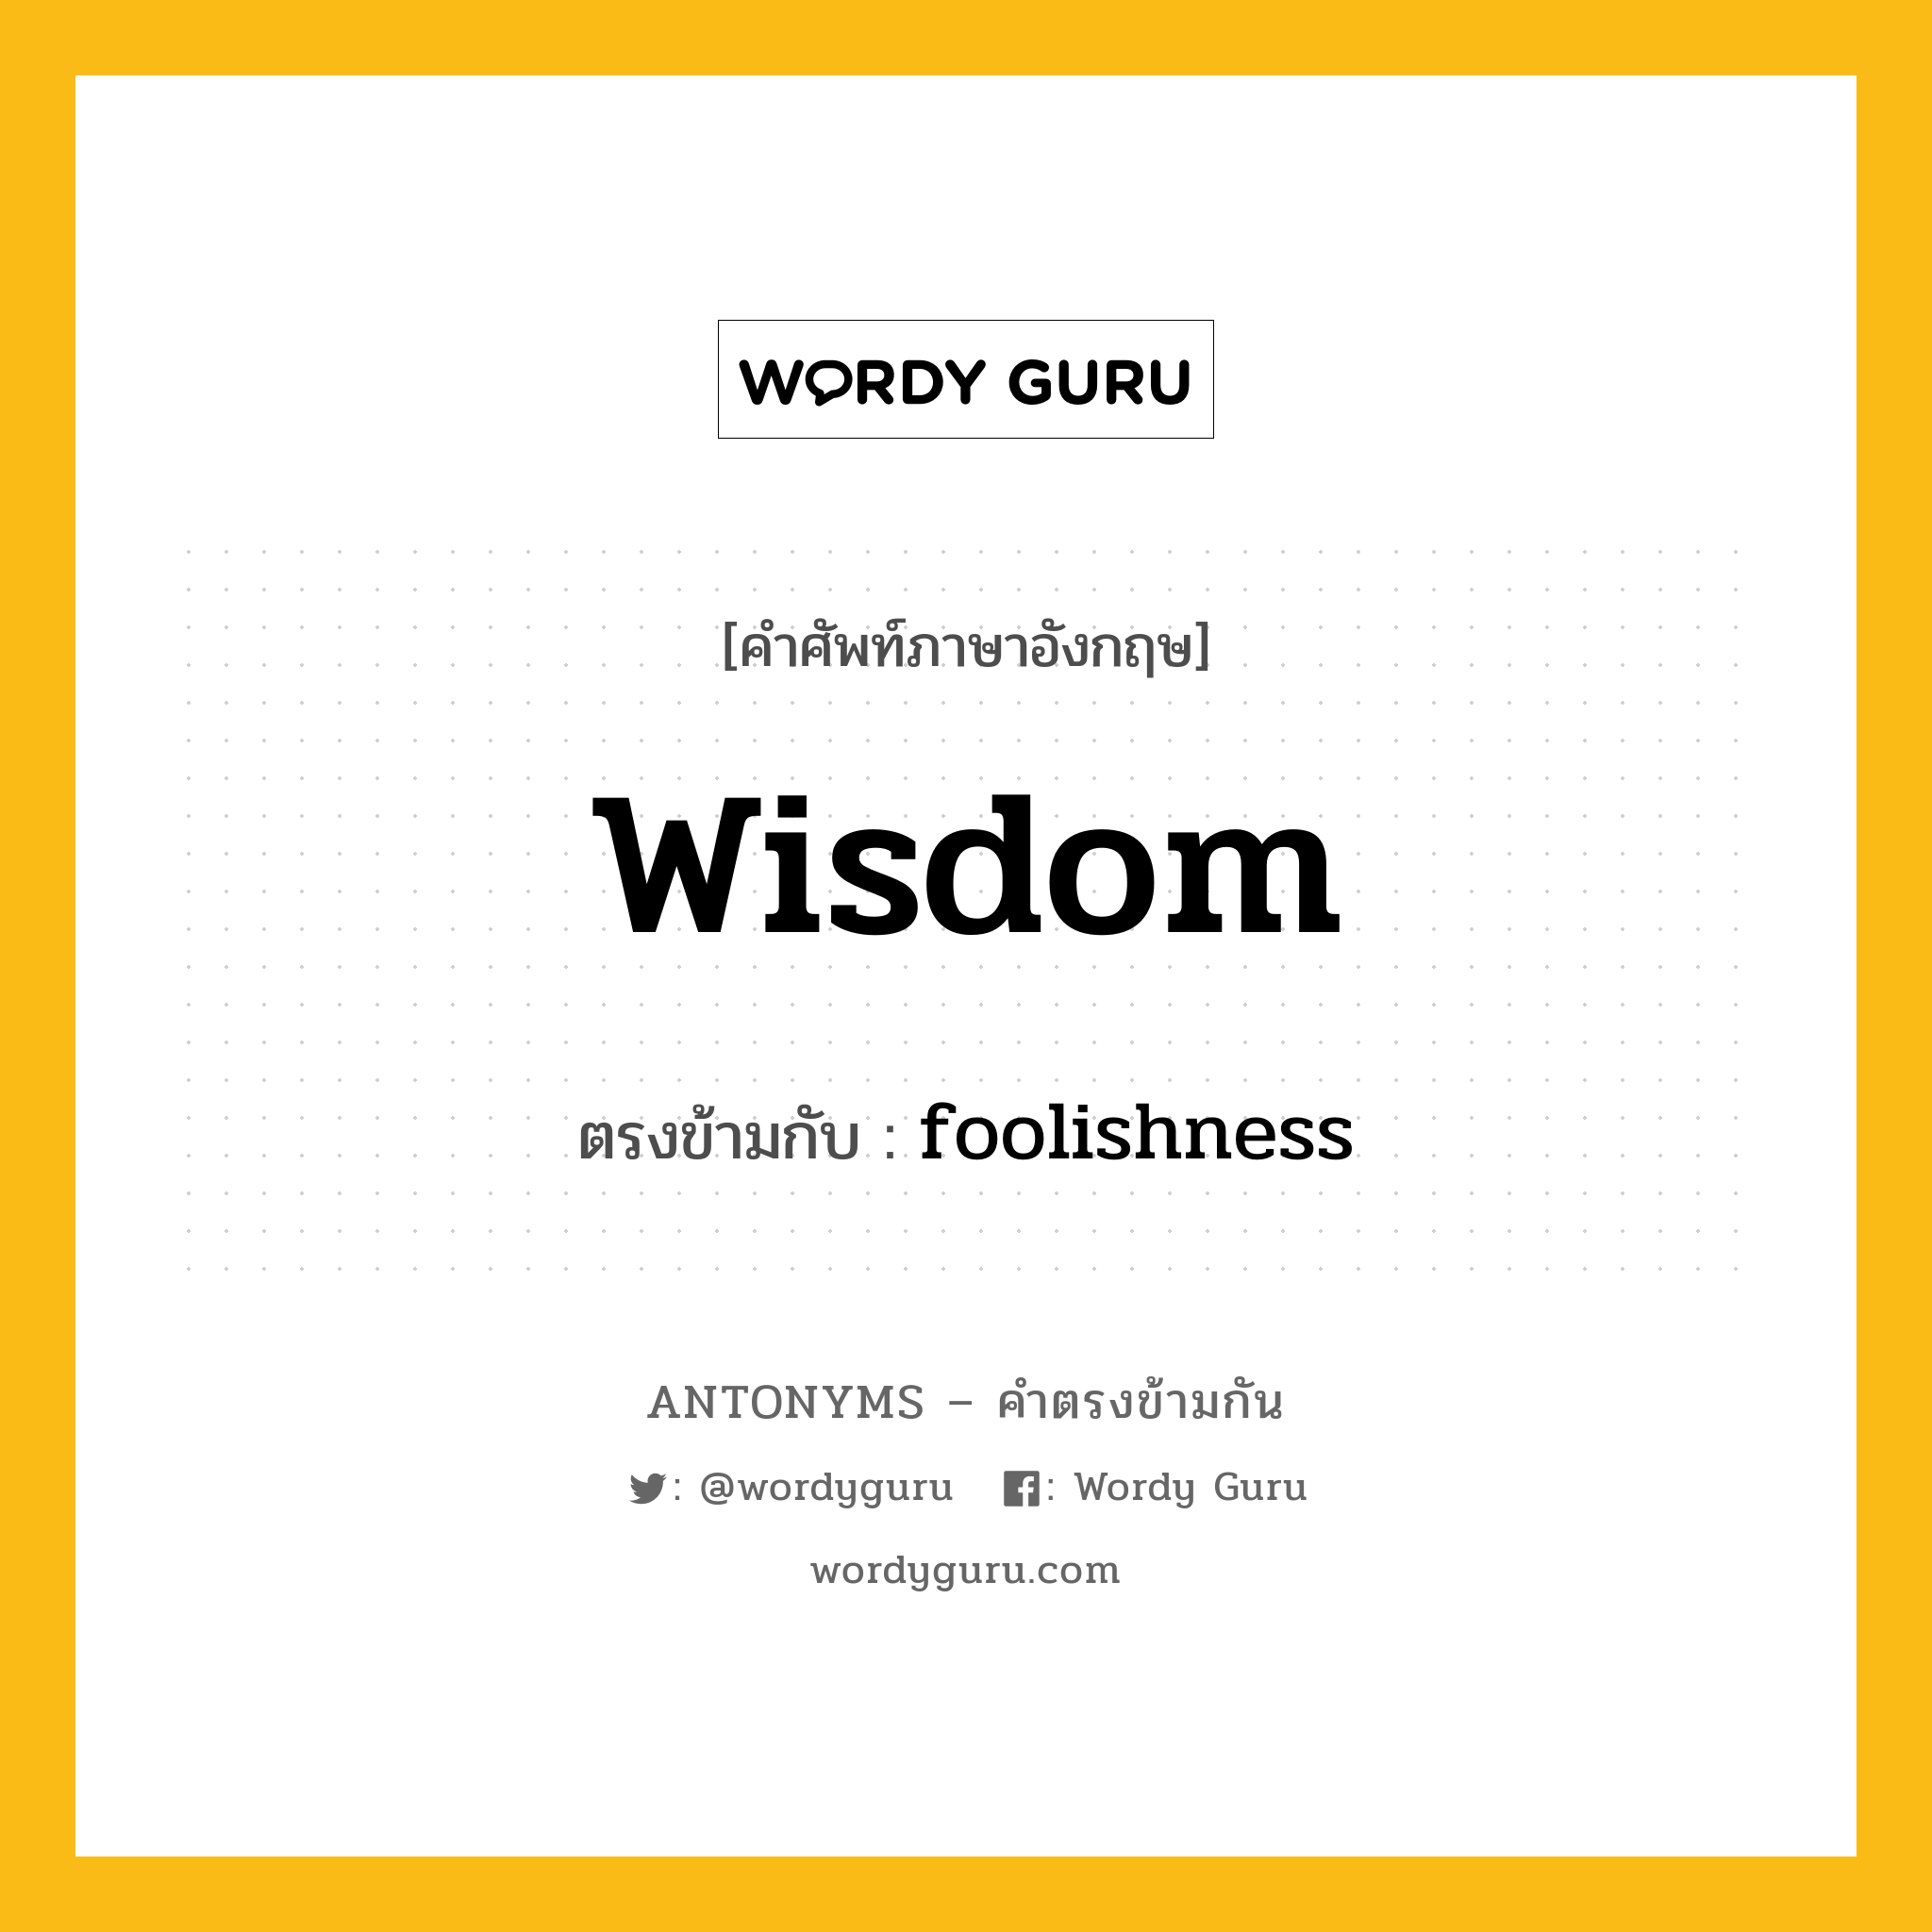 wisdom เป็นคำตรงข้ามกับคำไหนบ้าง?, คำศัพท์ภาษาอังกฤษ wisdom ตรงข้ามกับ foolishness หมวด foolishness